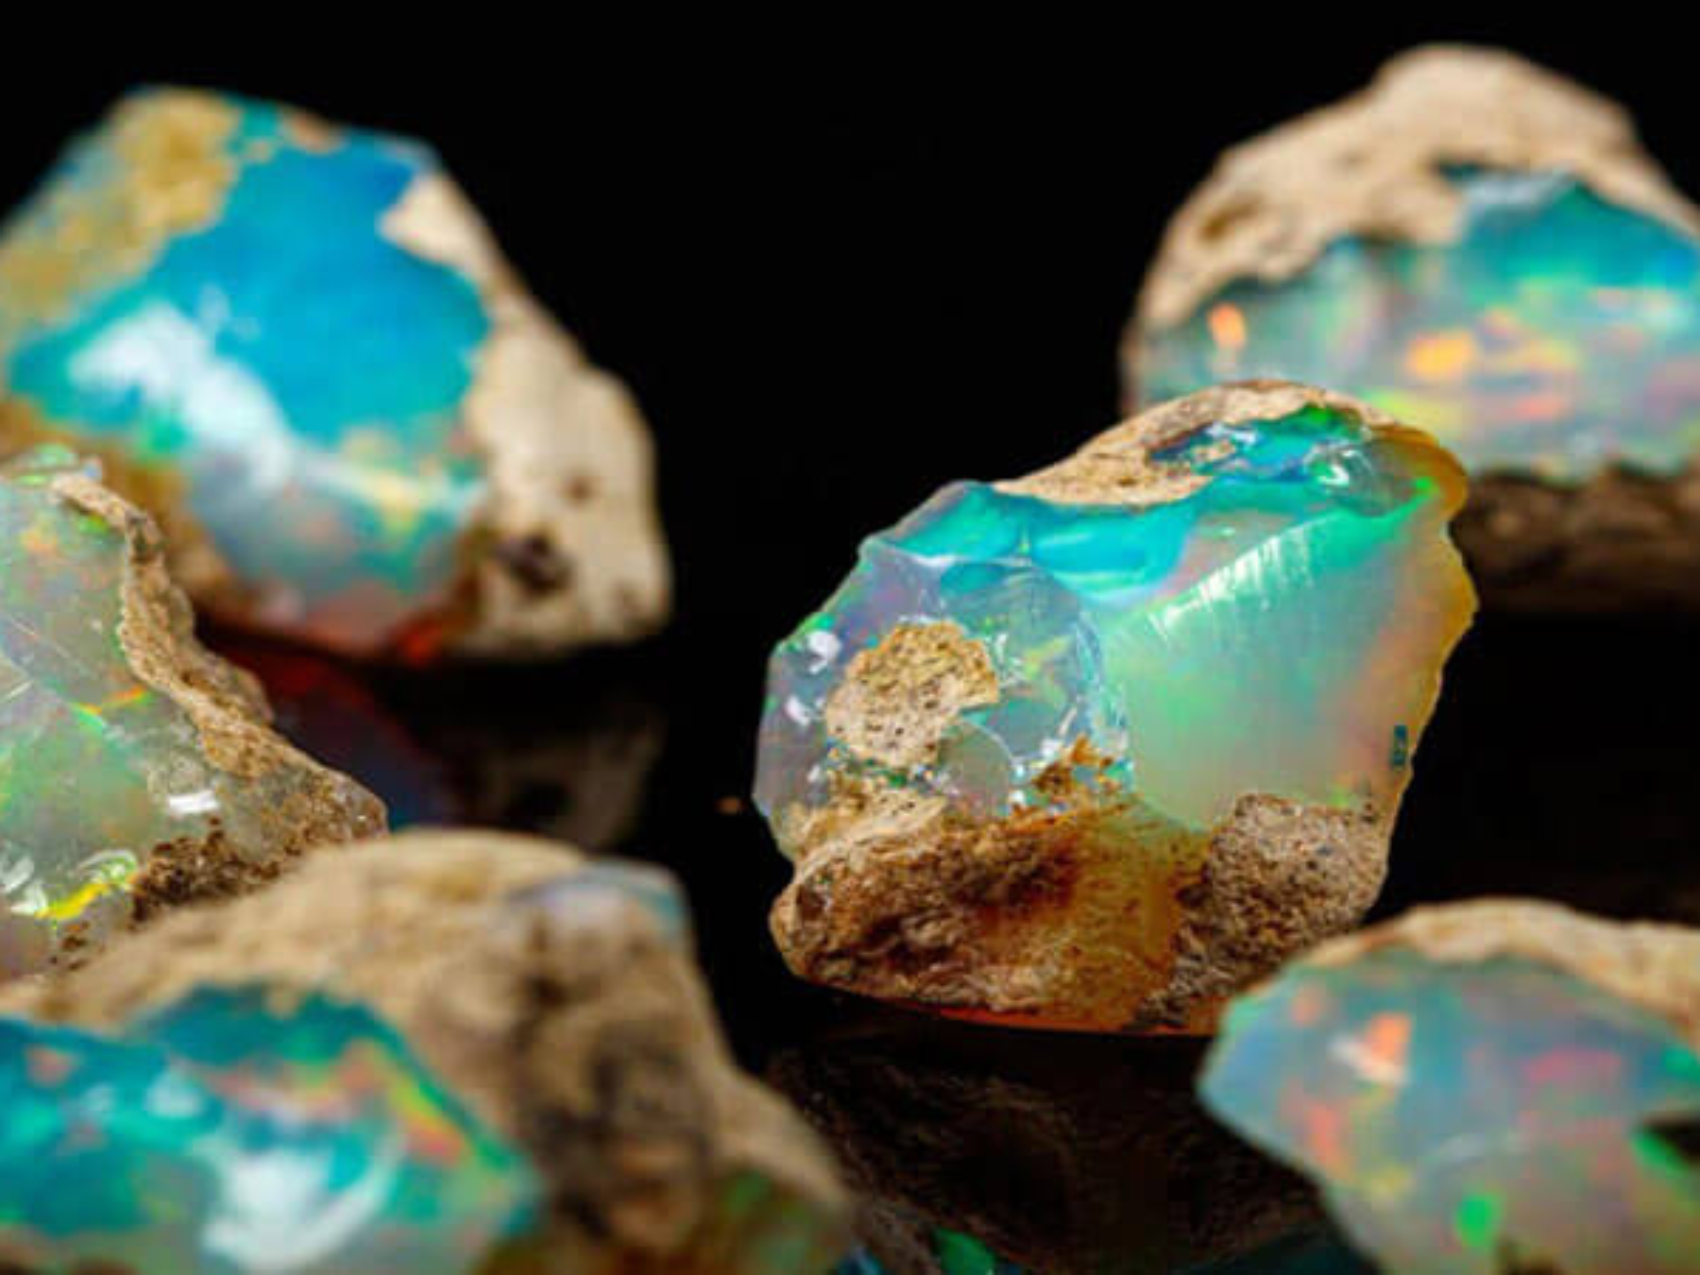 đá Opal xanh lam cover